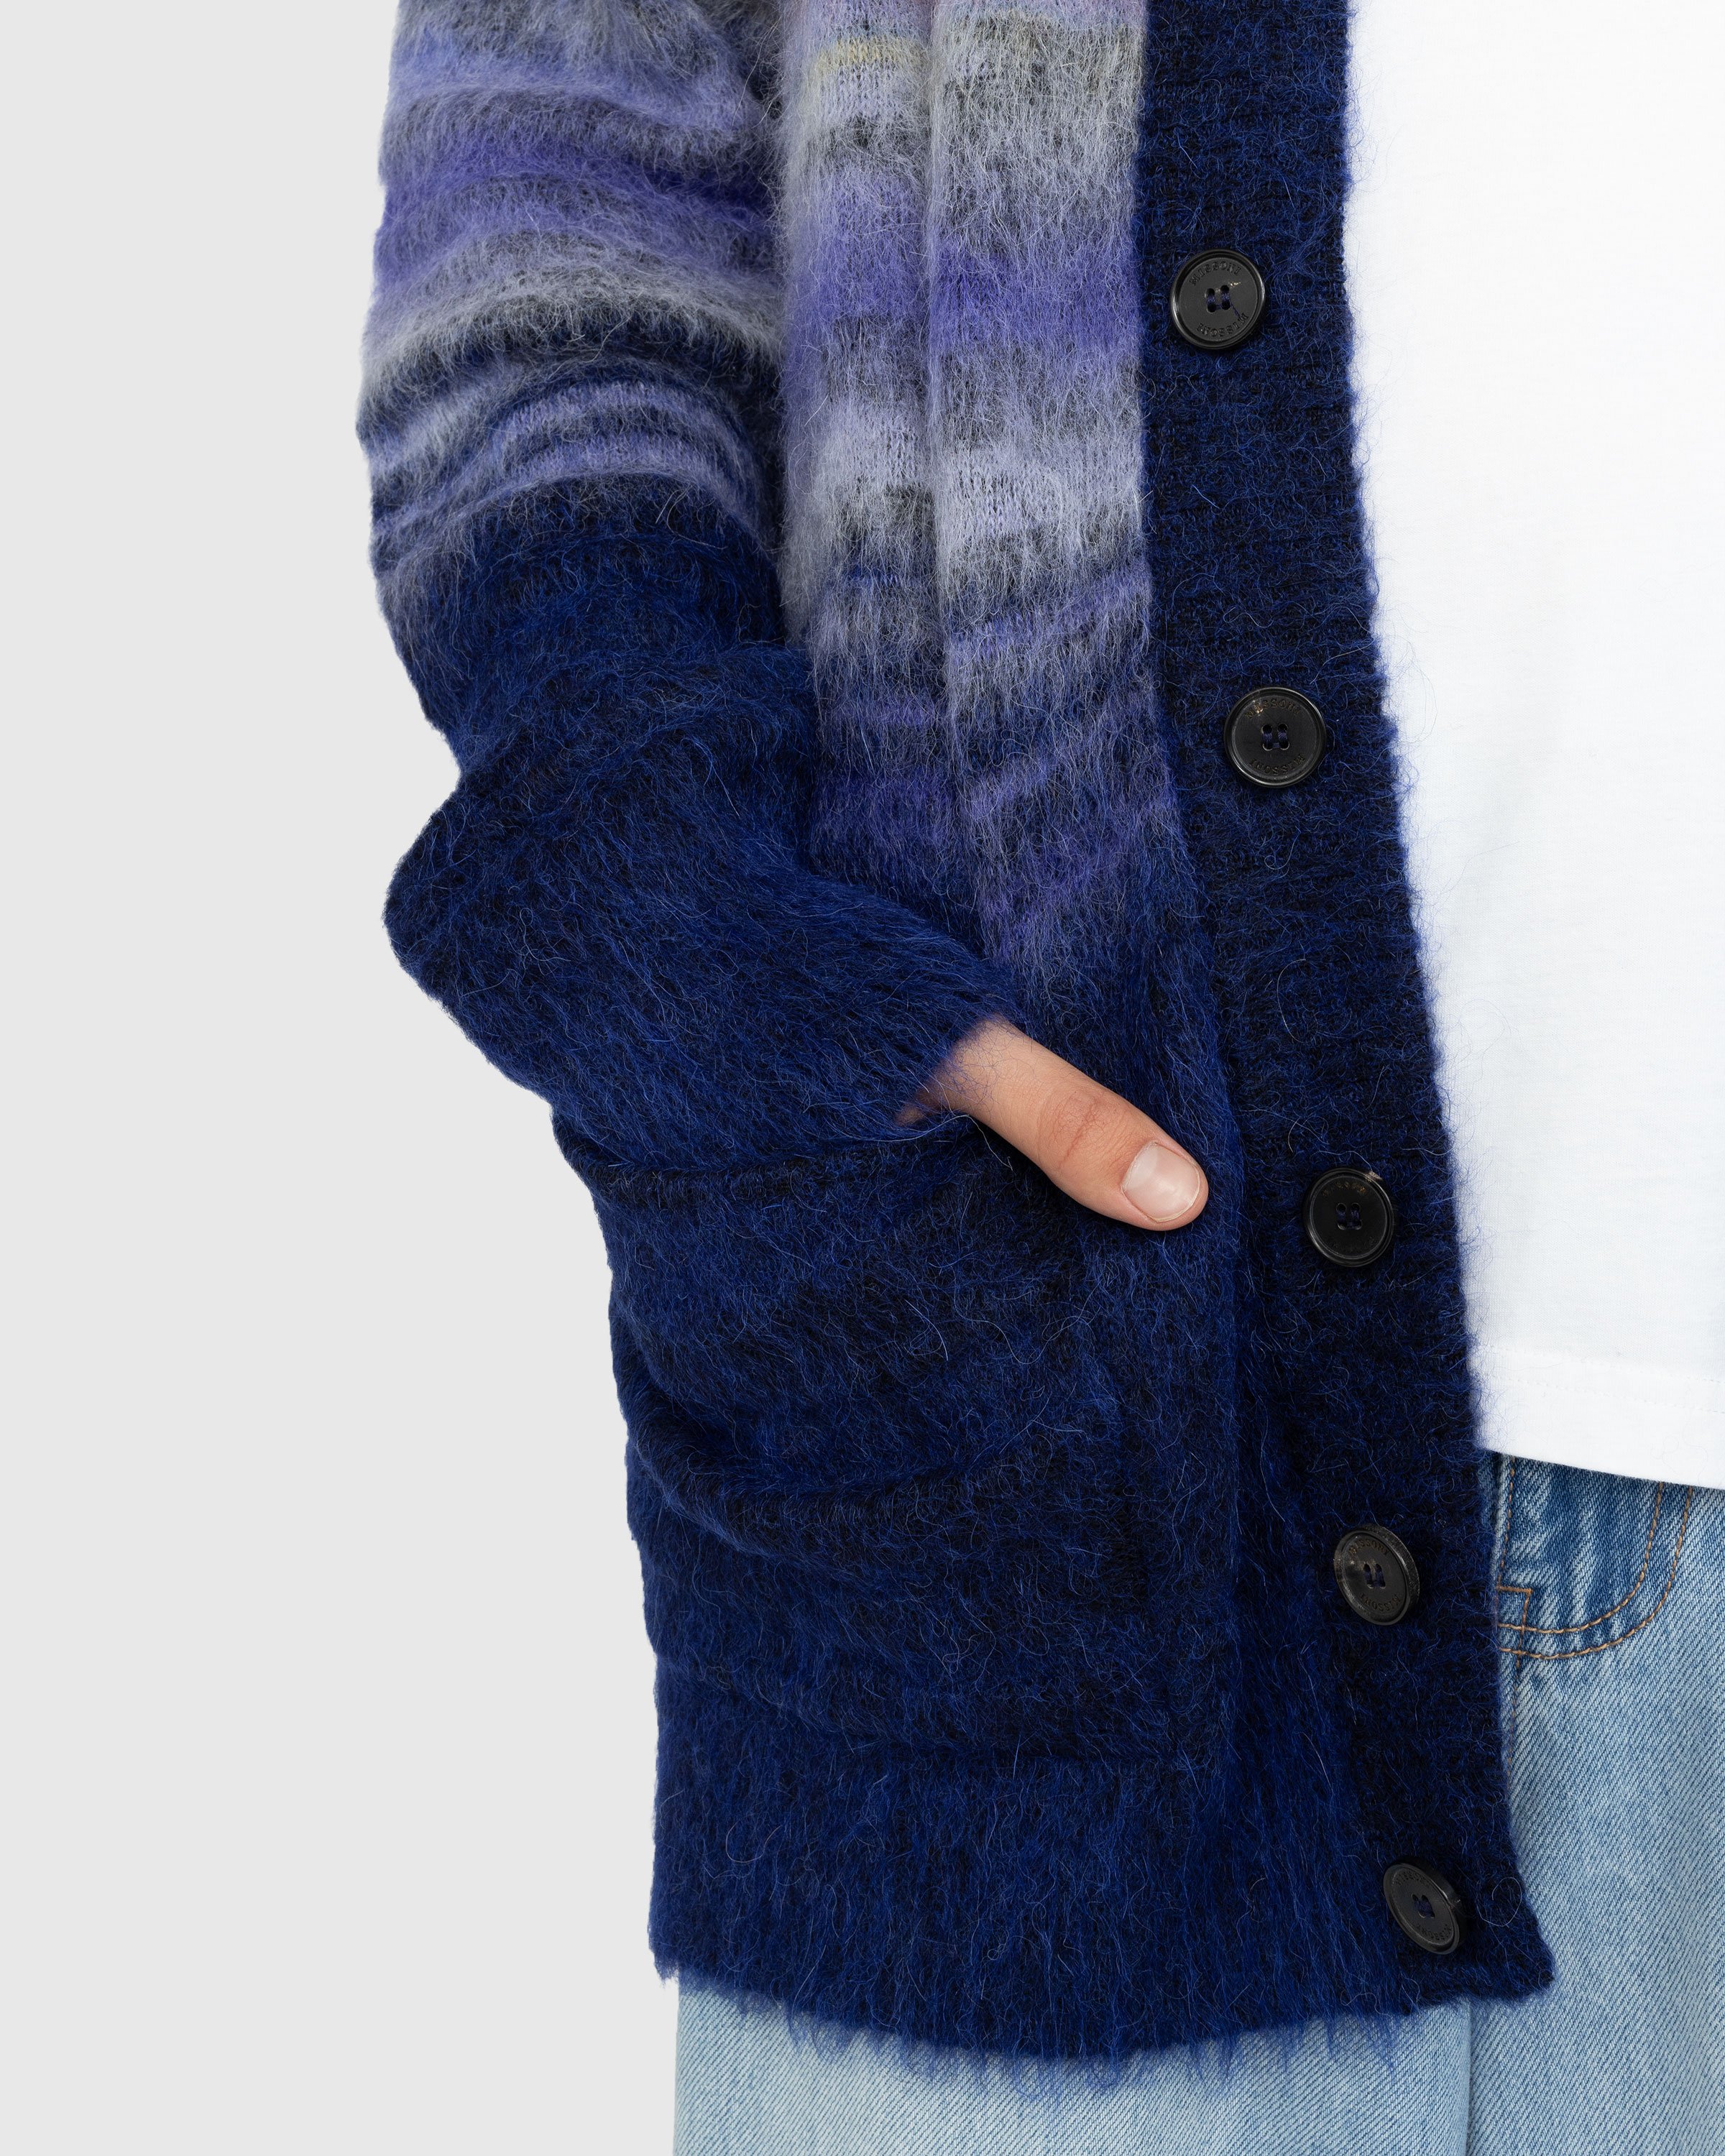 Missoni - Wool Cardigan Multi - Clothing - Multi - Image 4